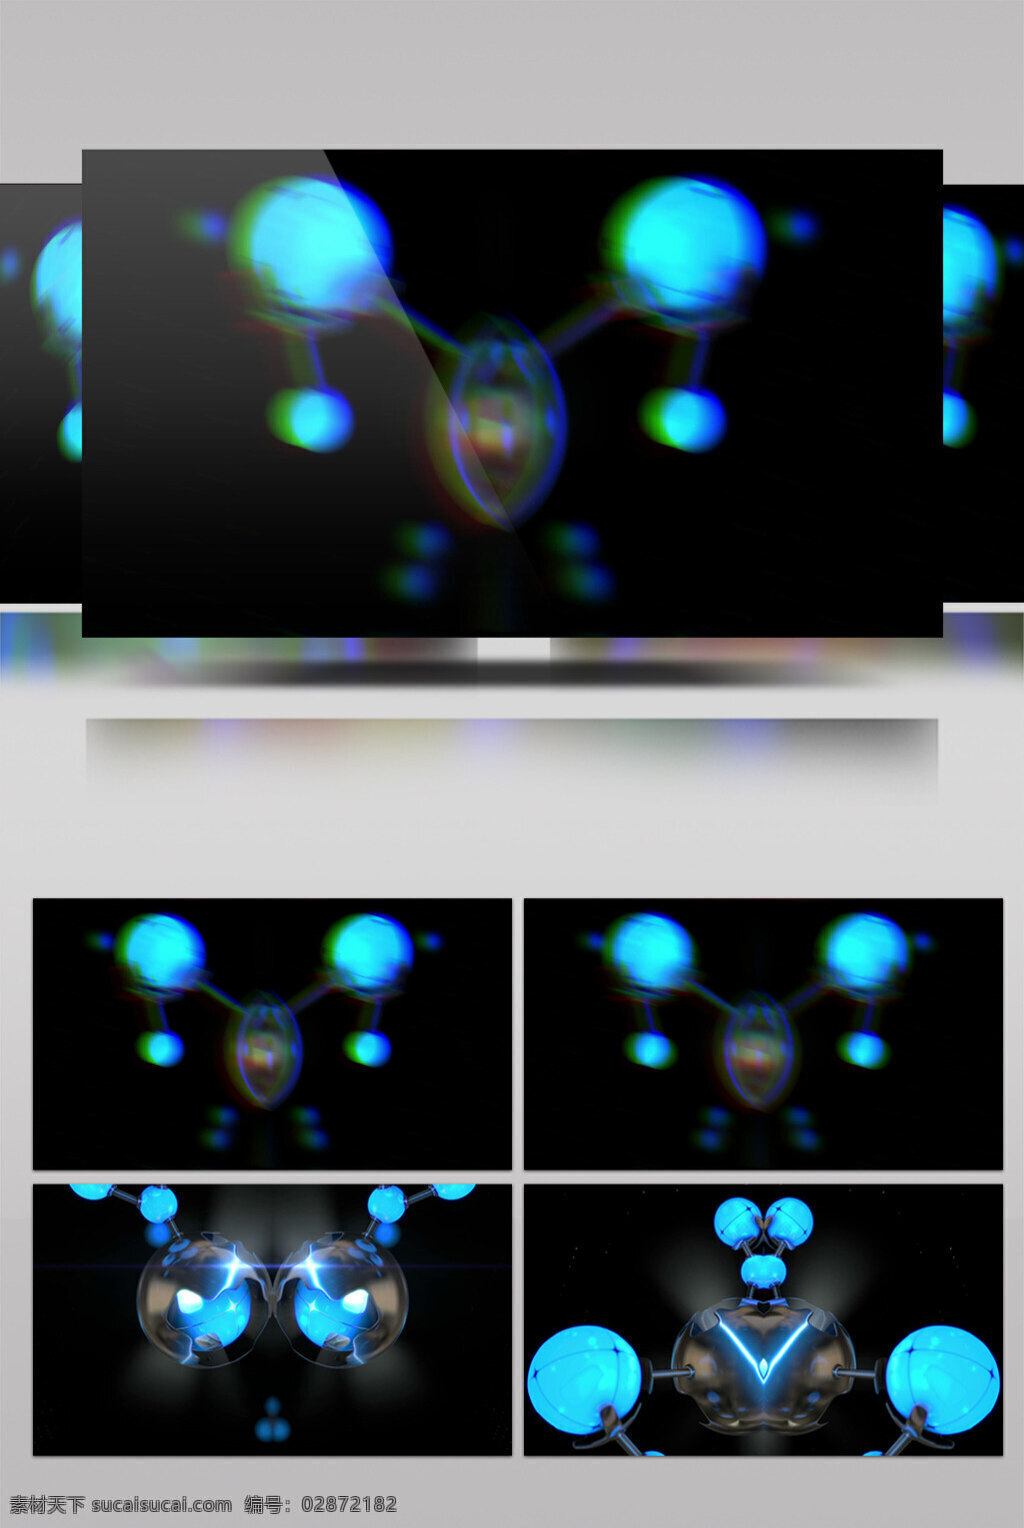 幽 蓝 灯光 视频 夜明珠 幽蓝灯光 动态星光 华丽流转 光芒四射 3d视频素材 特效视频素材